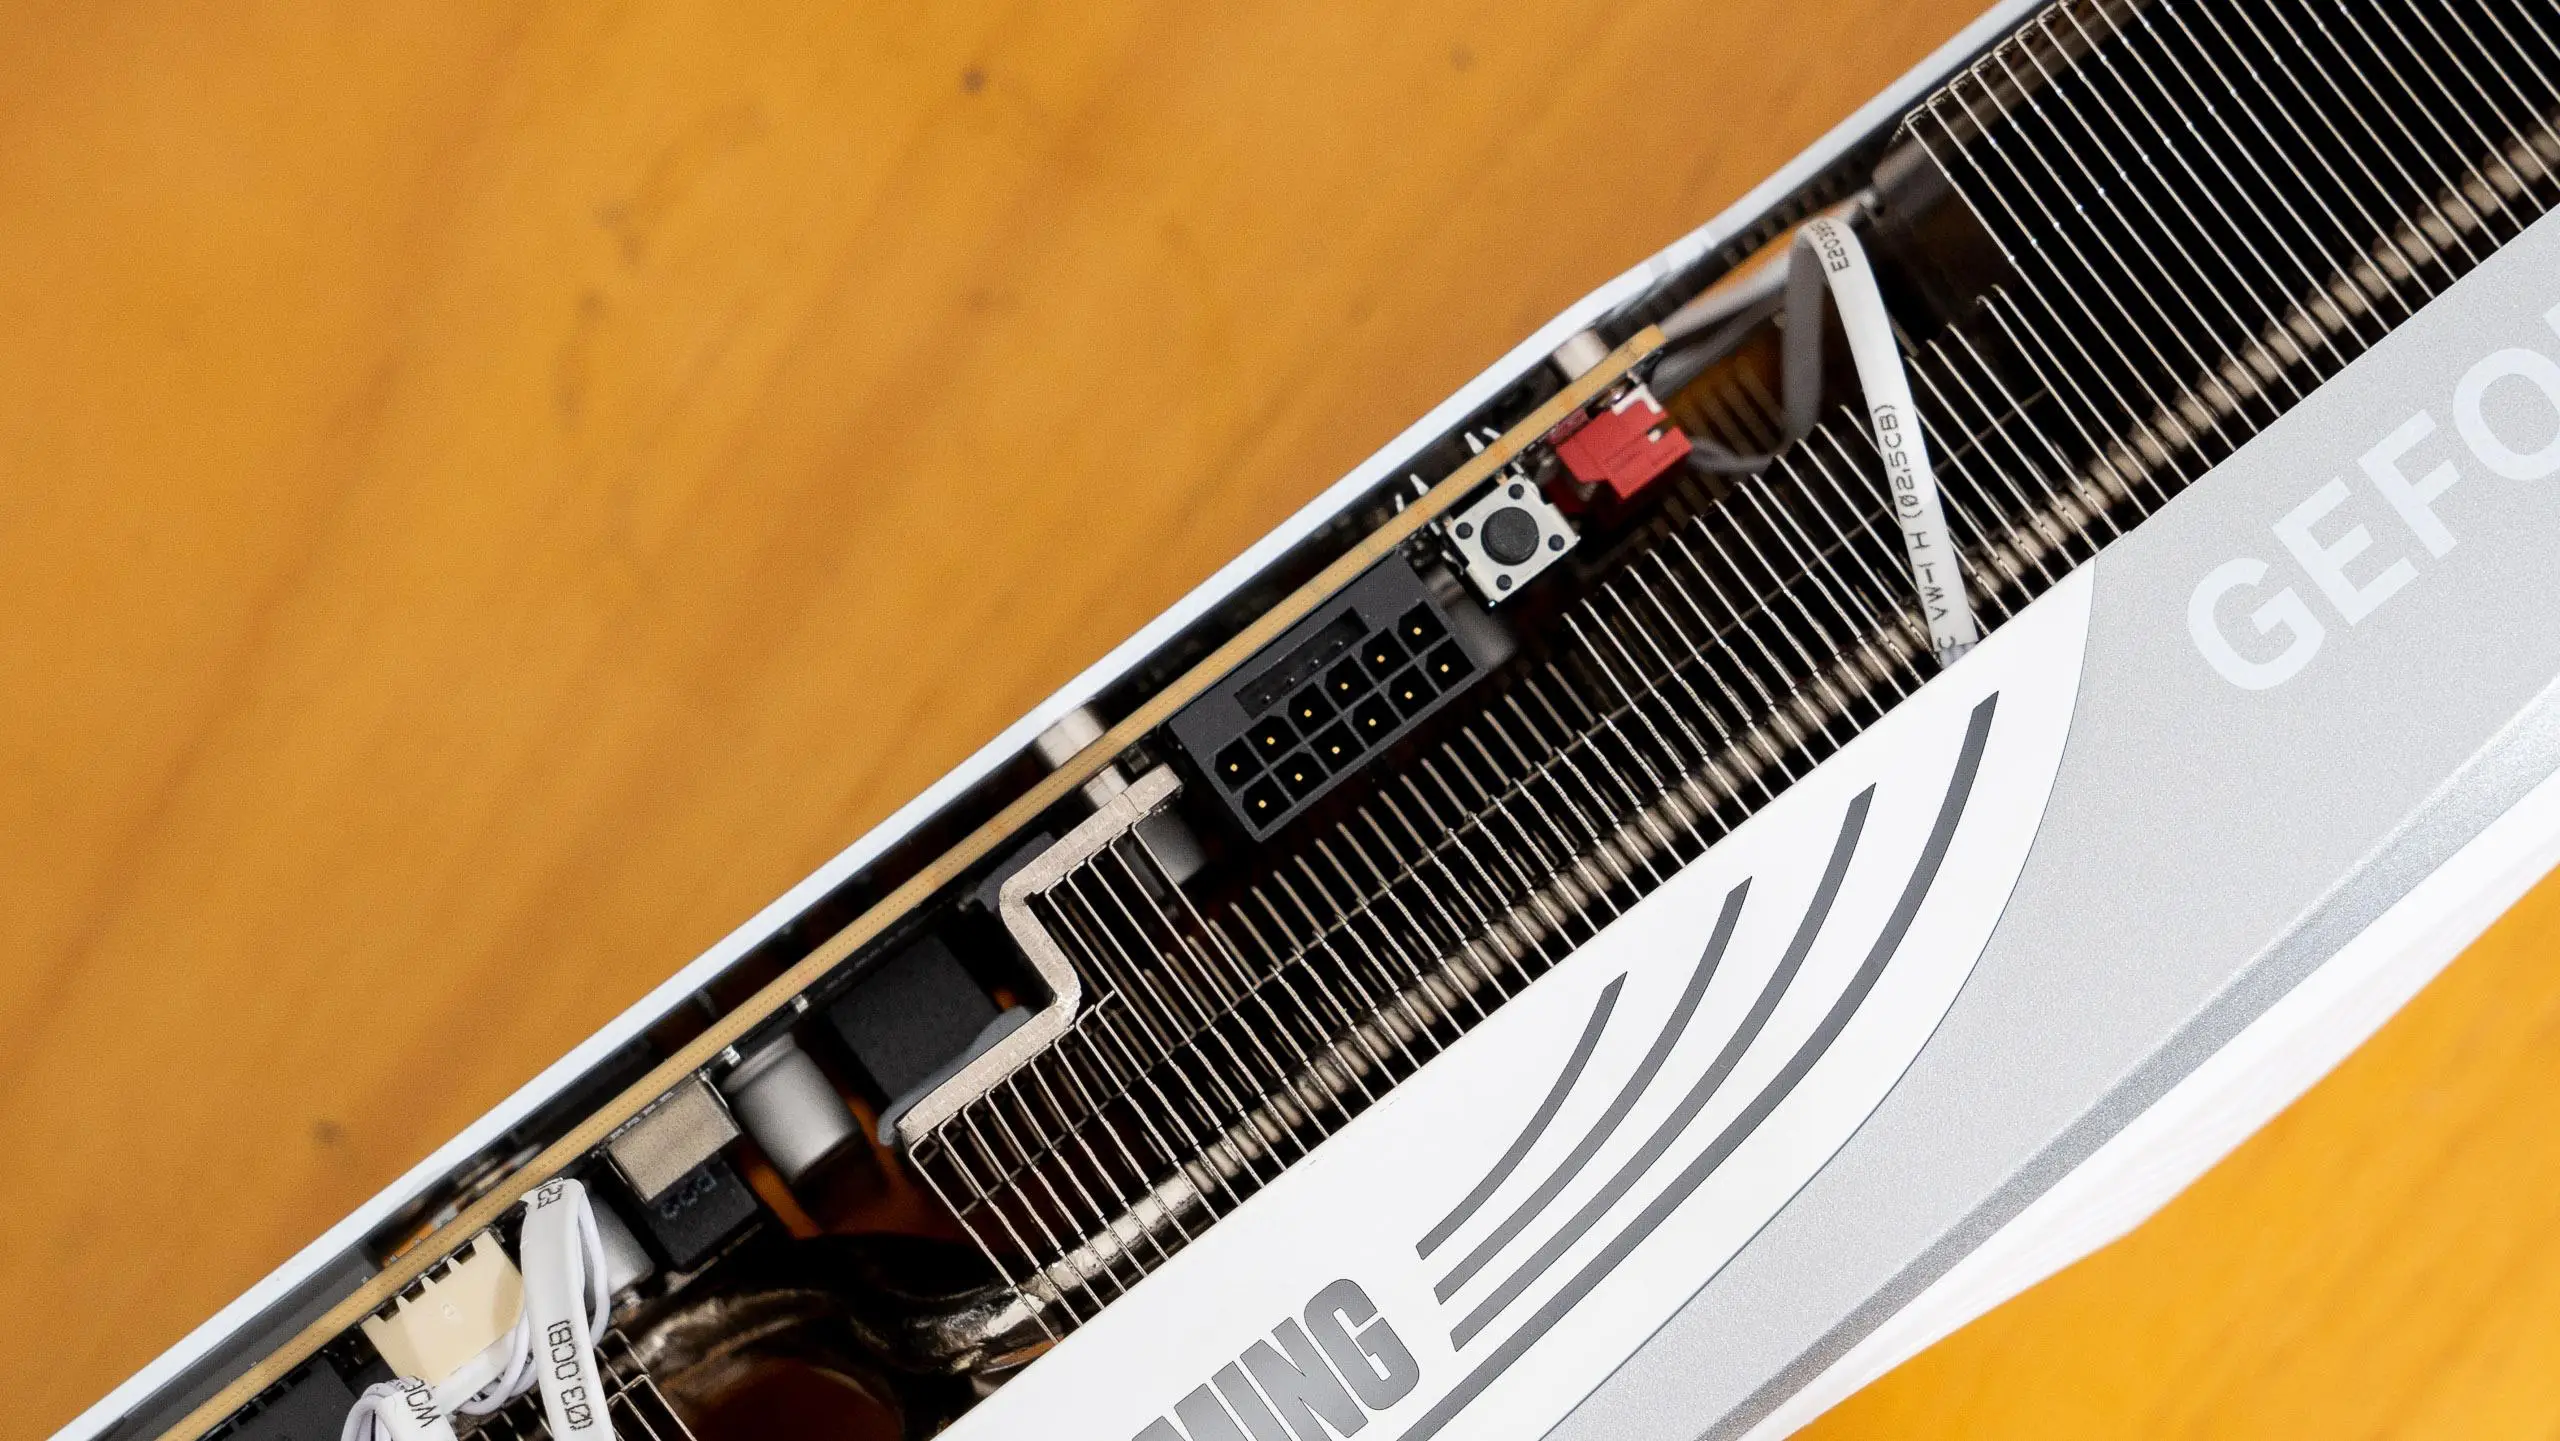 H510M 主板与 DDR5 内存融合，开启震撼技术盛宴  第6张